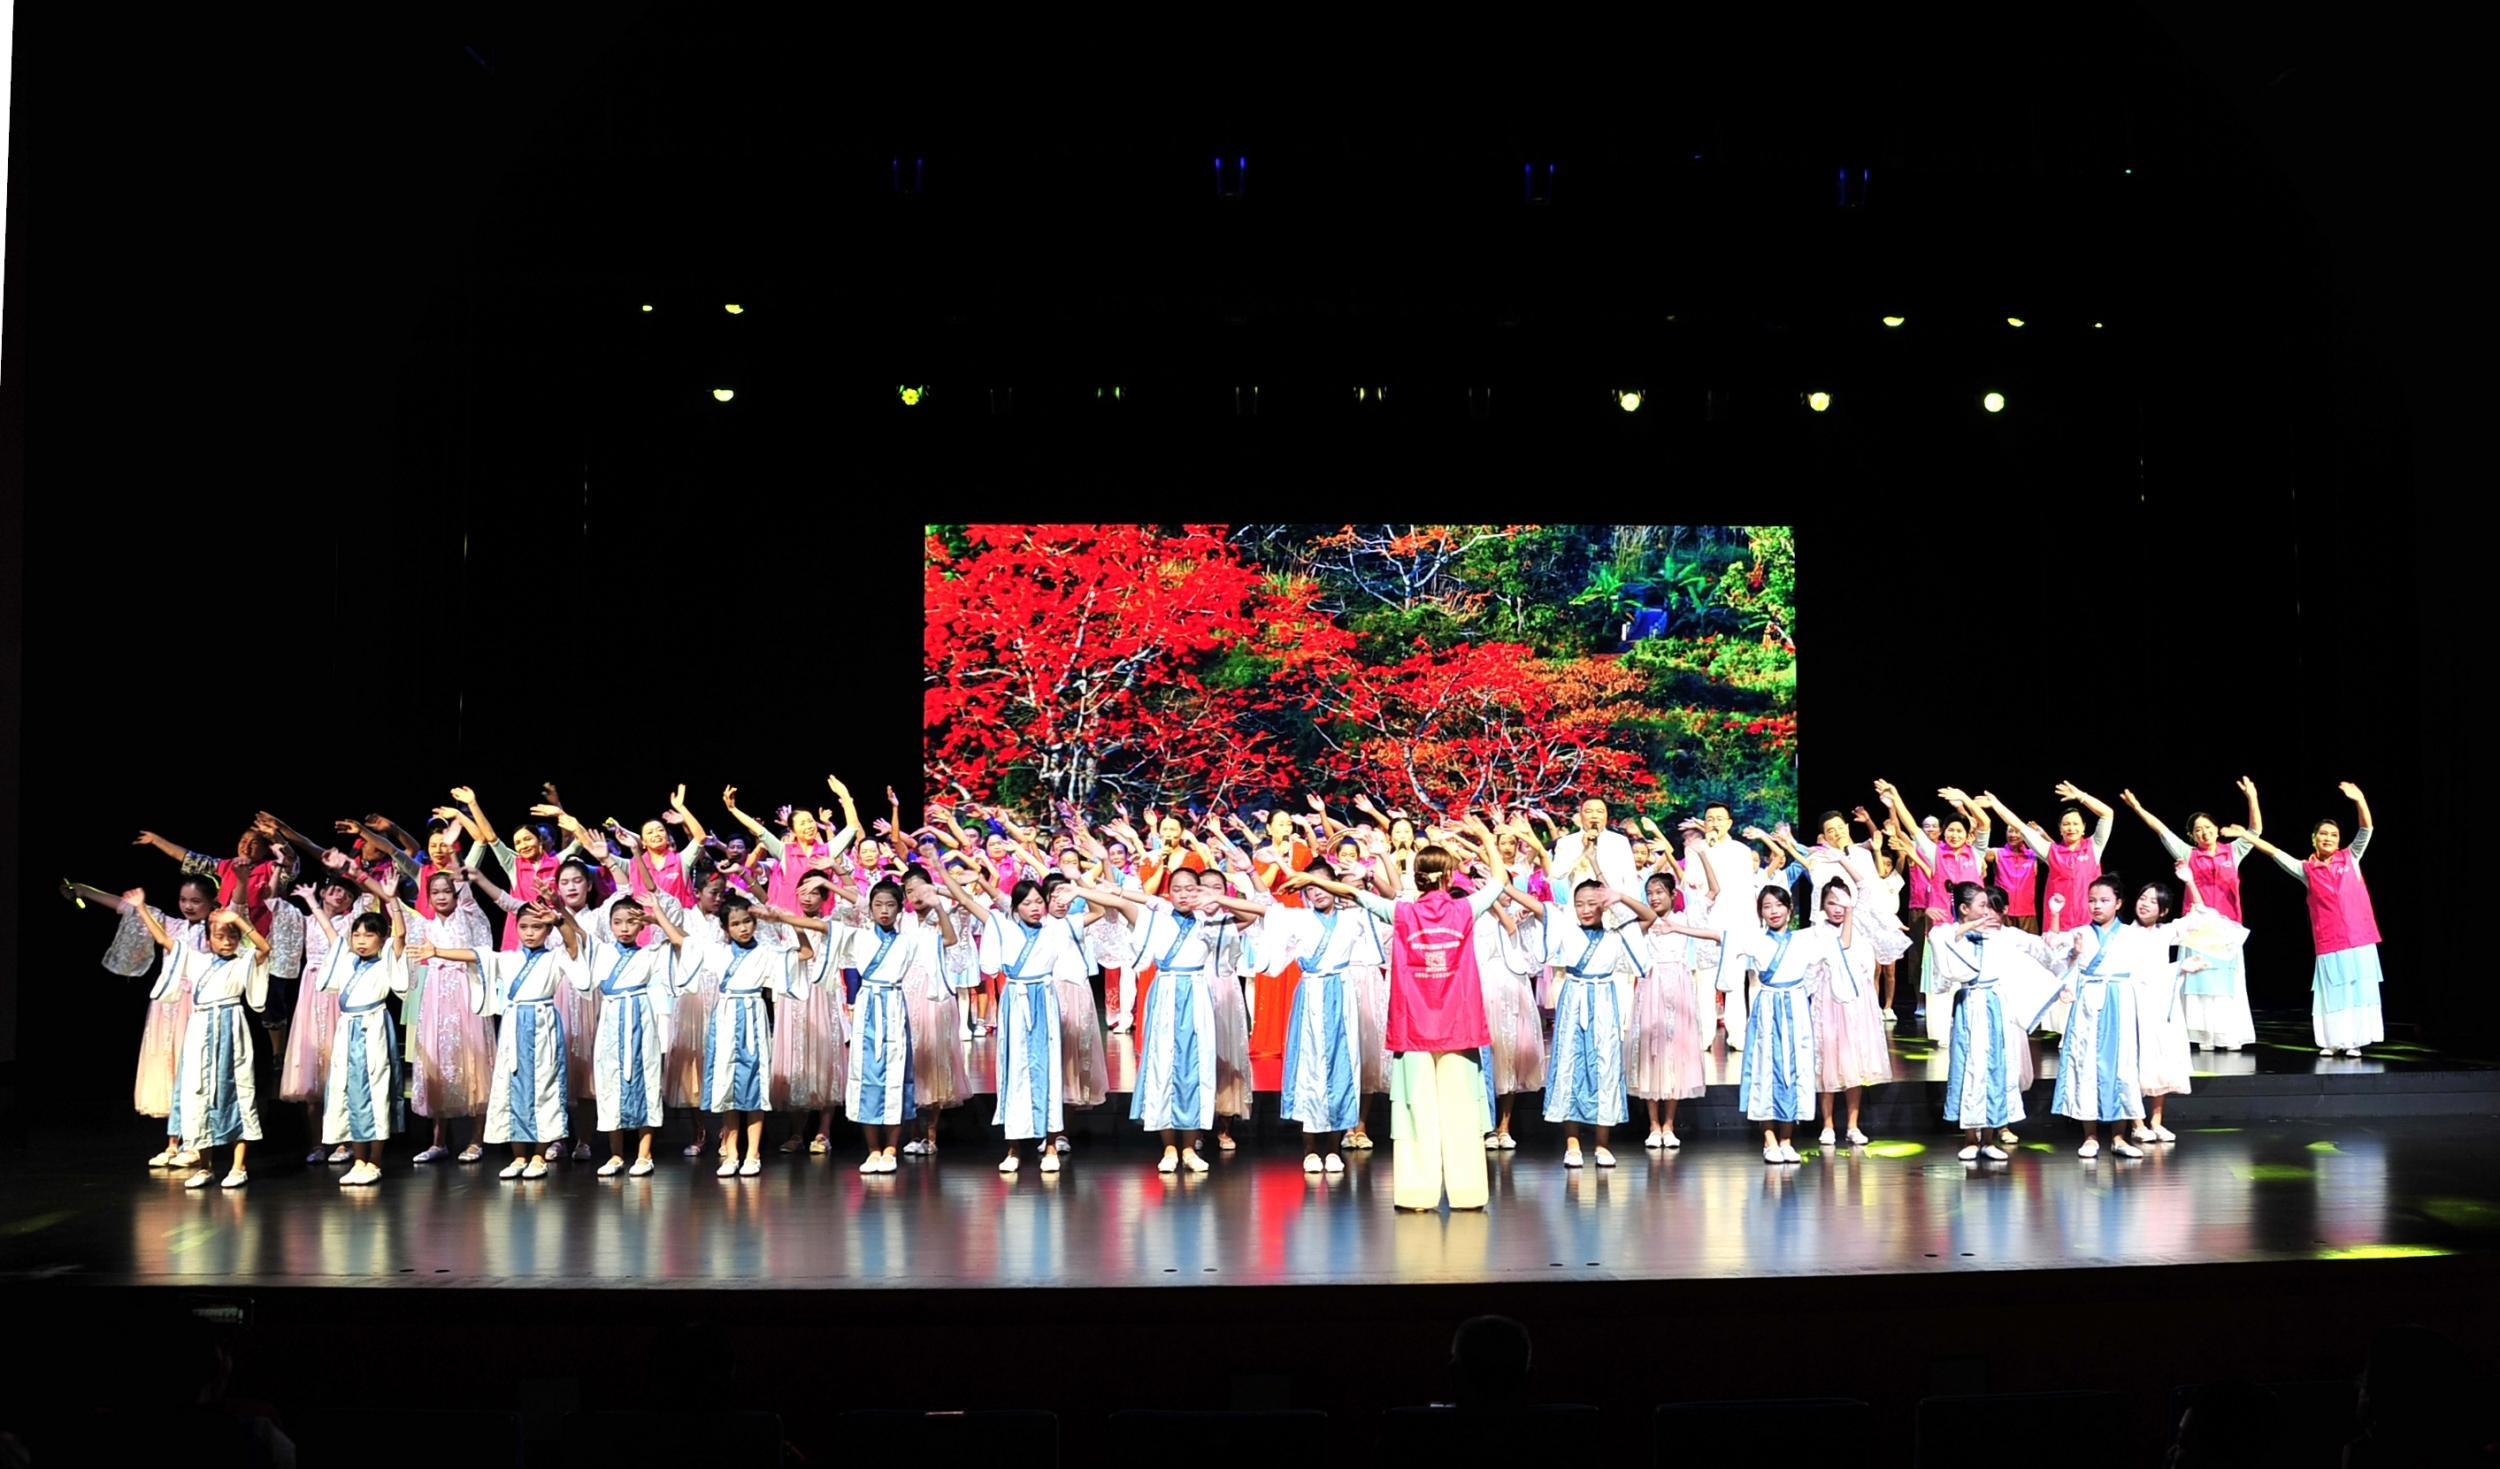 三亚、儋州、昌江三市县齐聚东方展演海南军话民歌 16个军话节目精彩上演